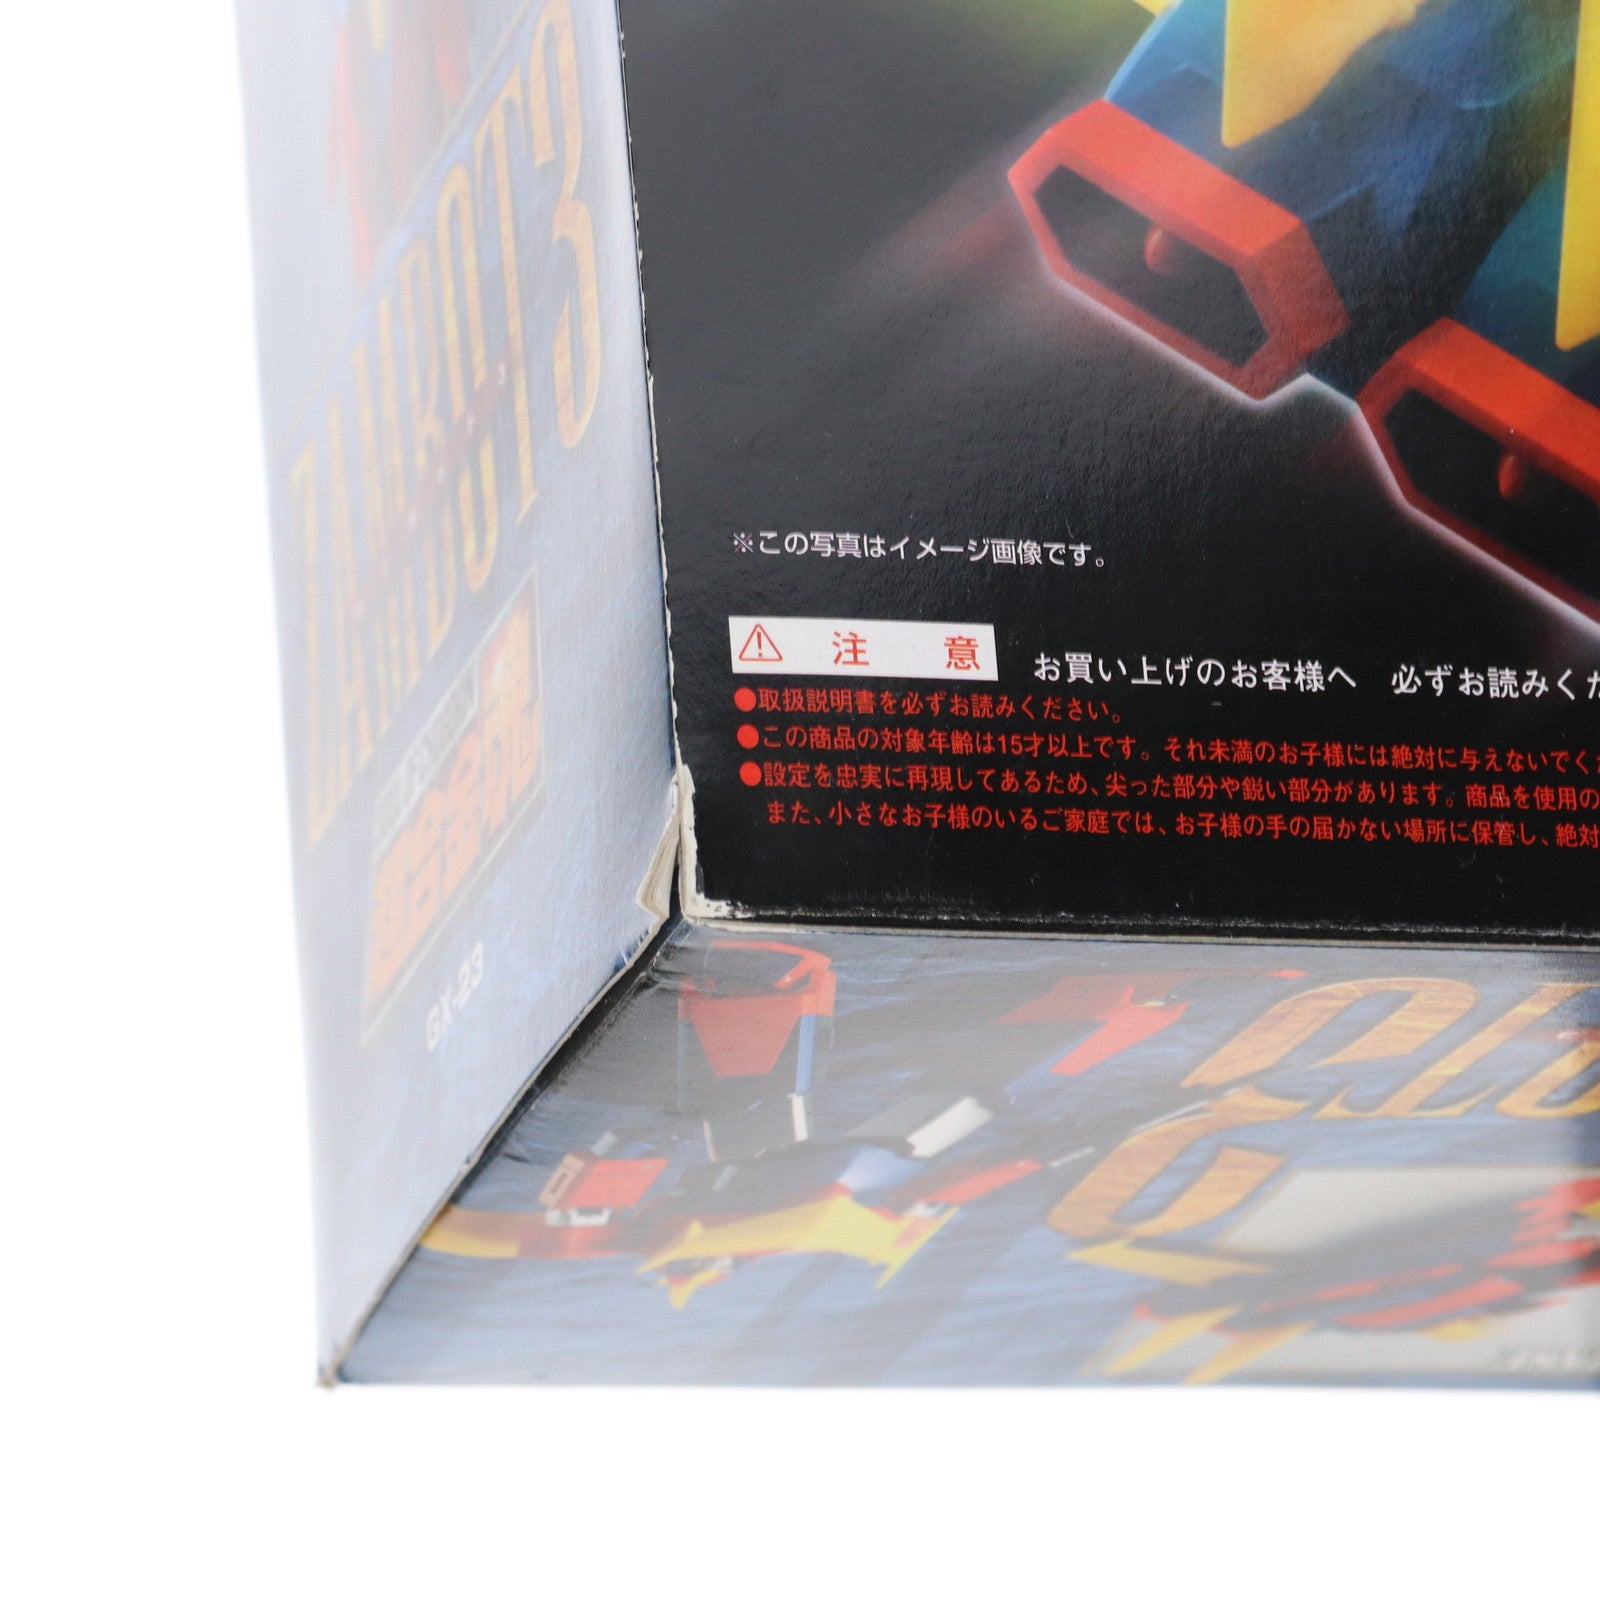 【中古即納】[TOY]超合金魂 GX-23 無敵超人ザンボット3 完成トイ バンダイ(20130426)